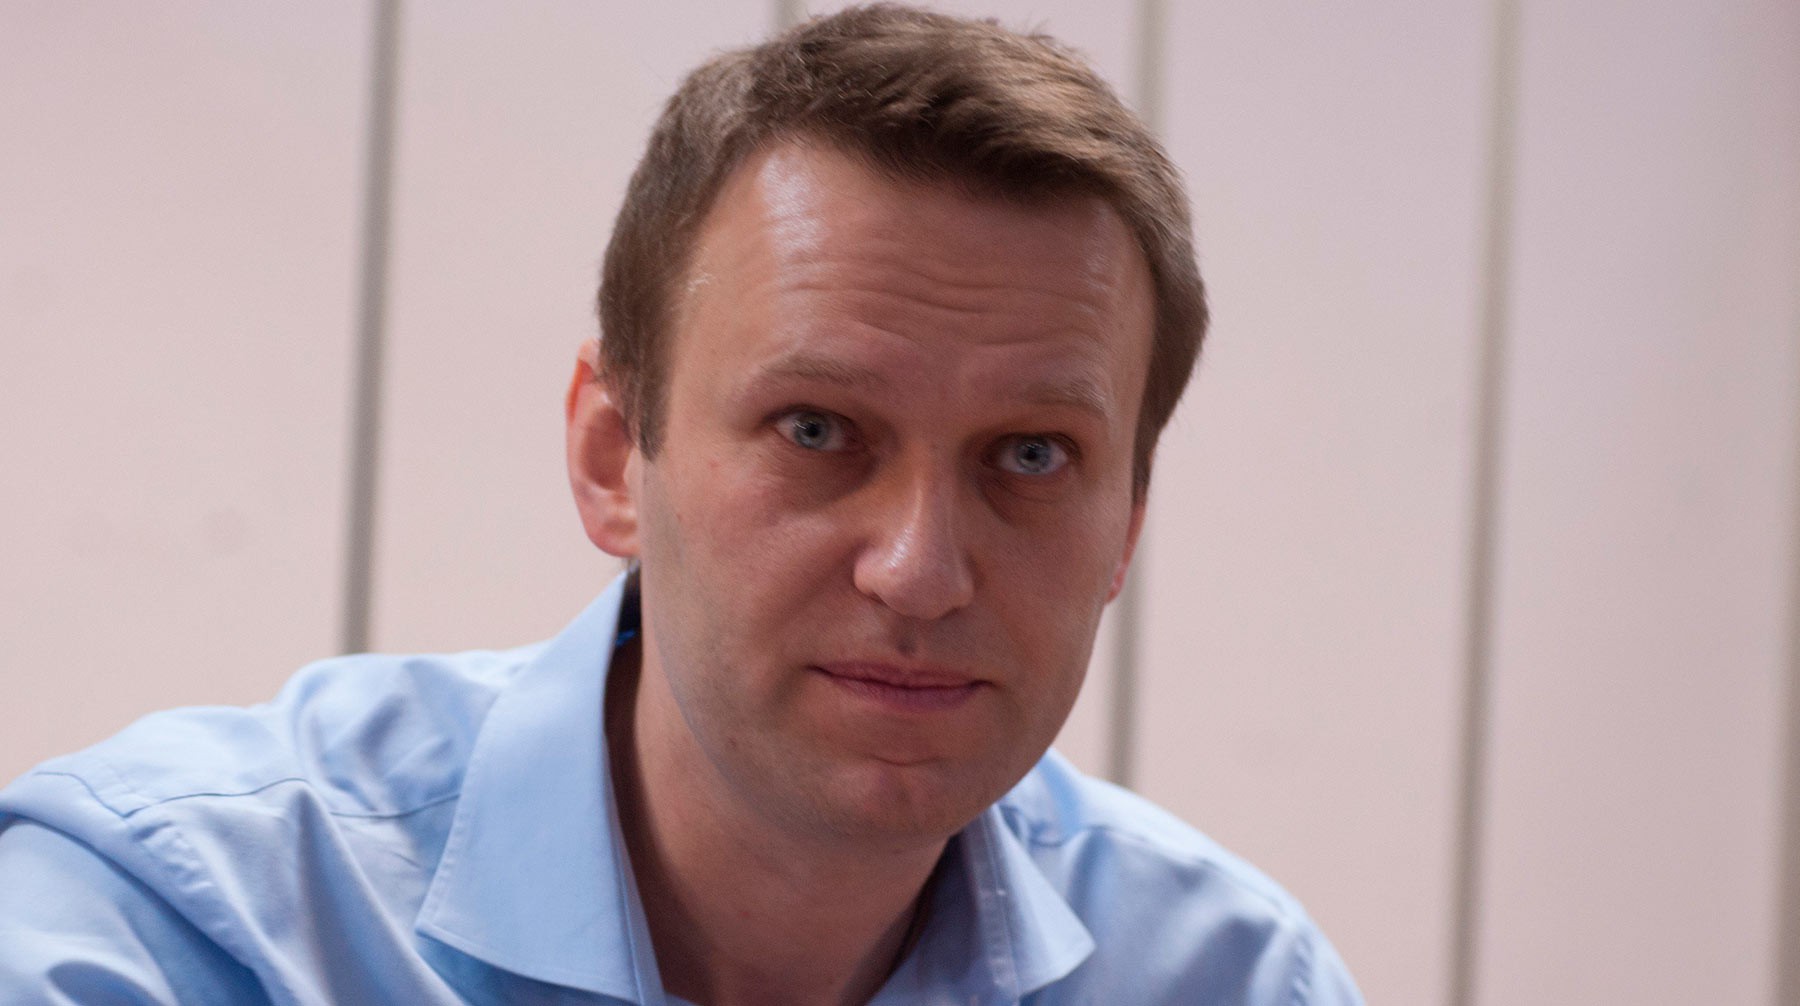 Dailystorm - Роспотребнадзор не нашел следов яда в номере Навального в Томске